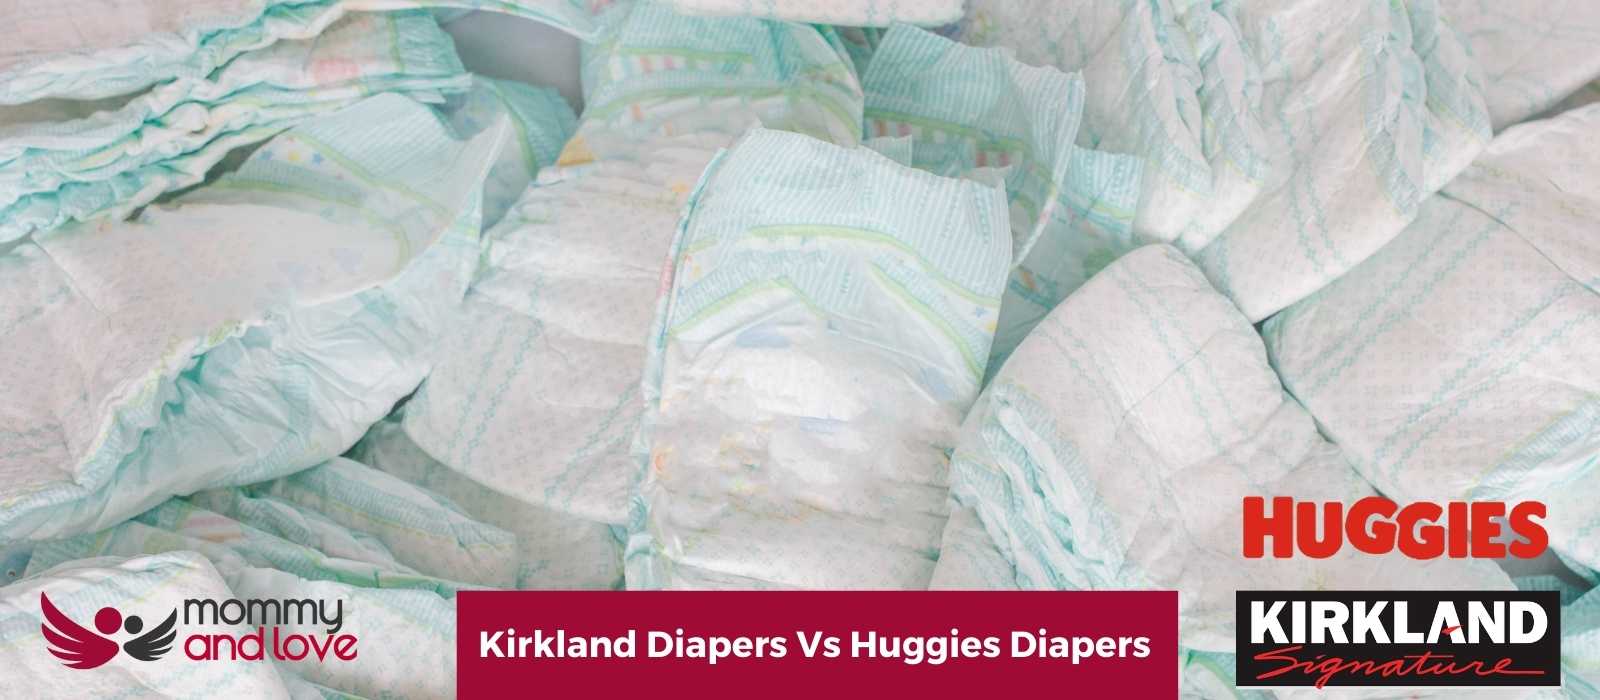 Kirkland Diapers Vs Huggies Diapers